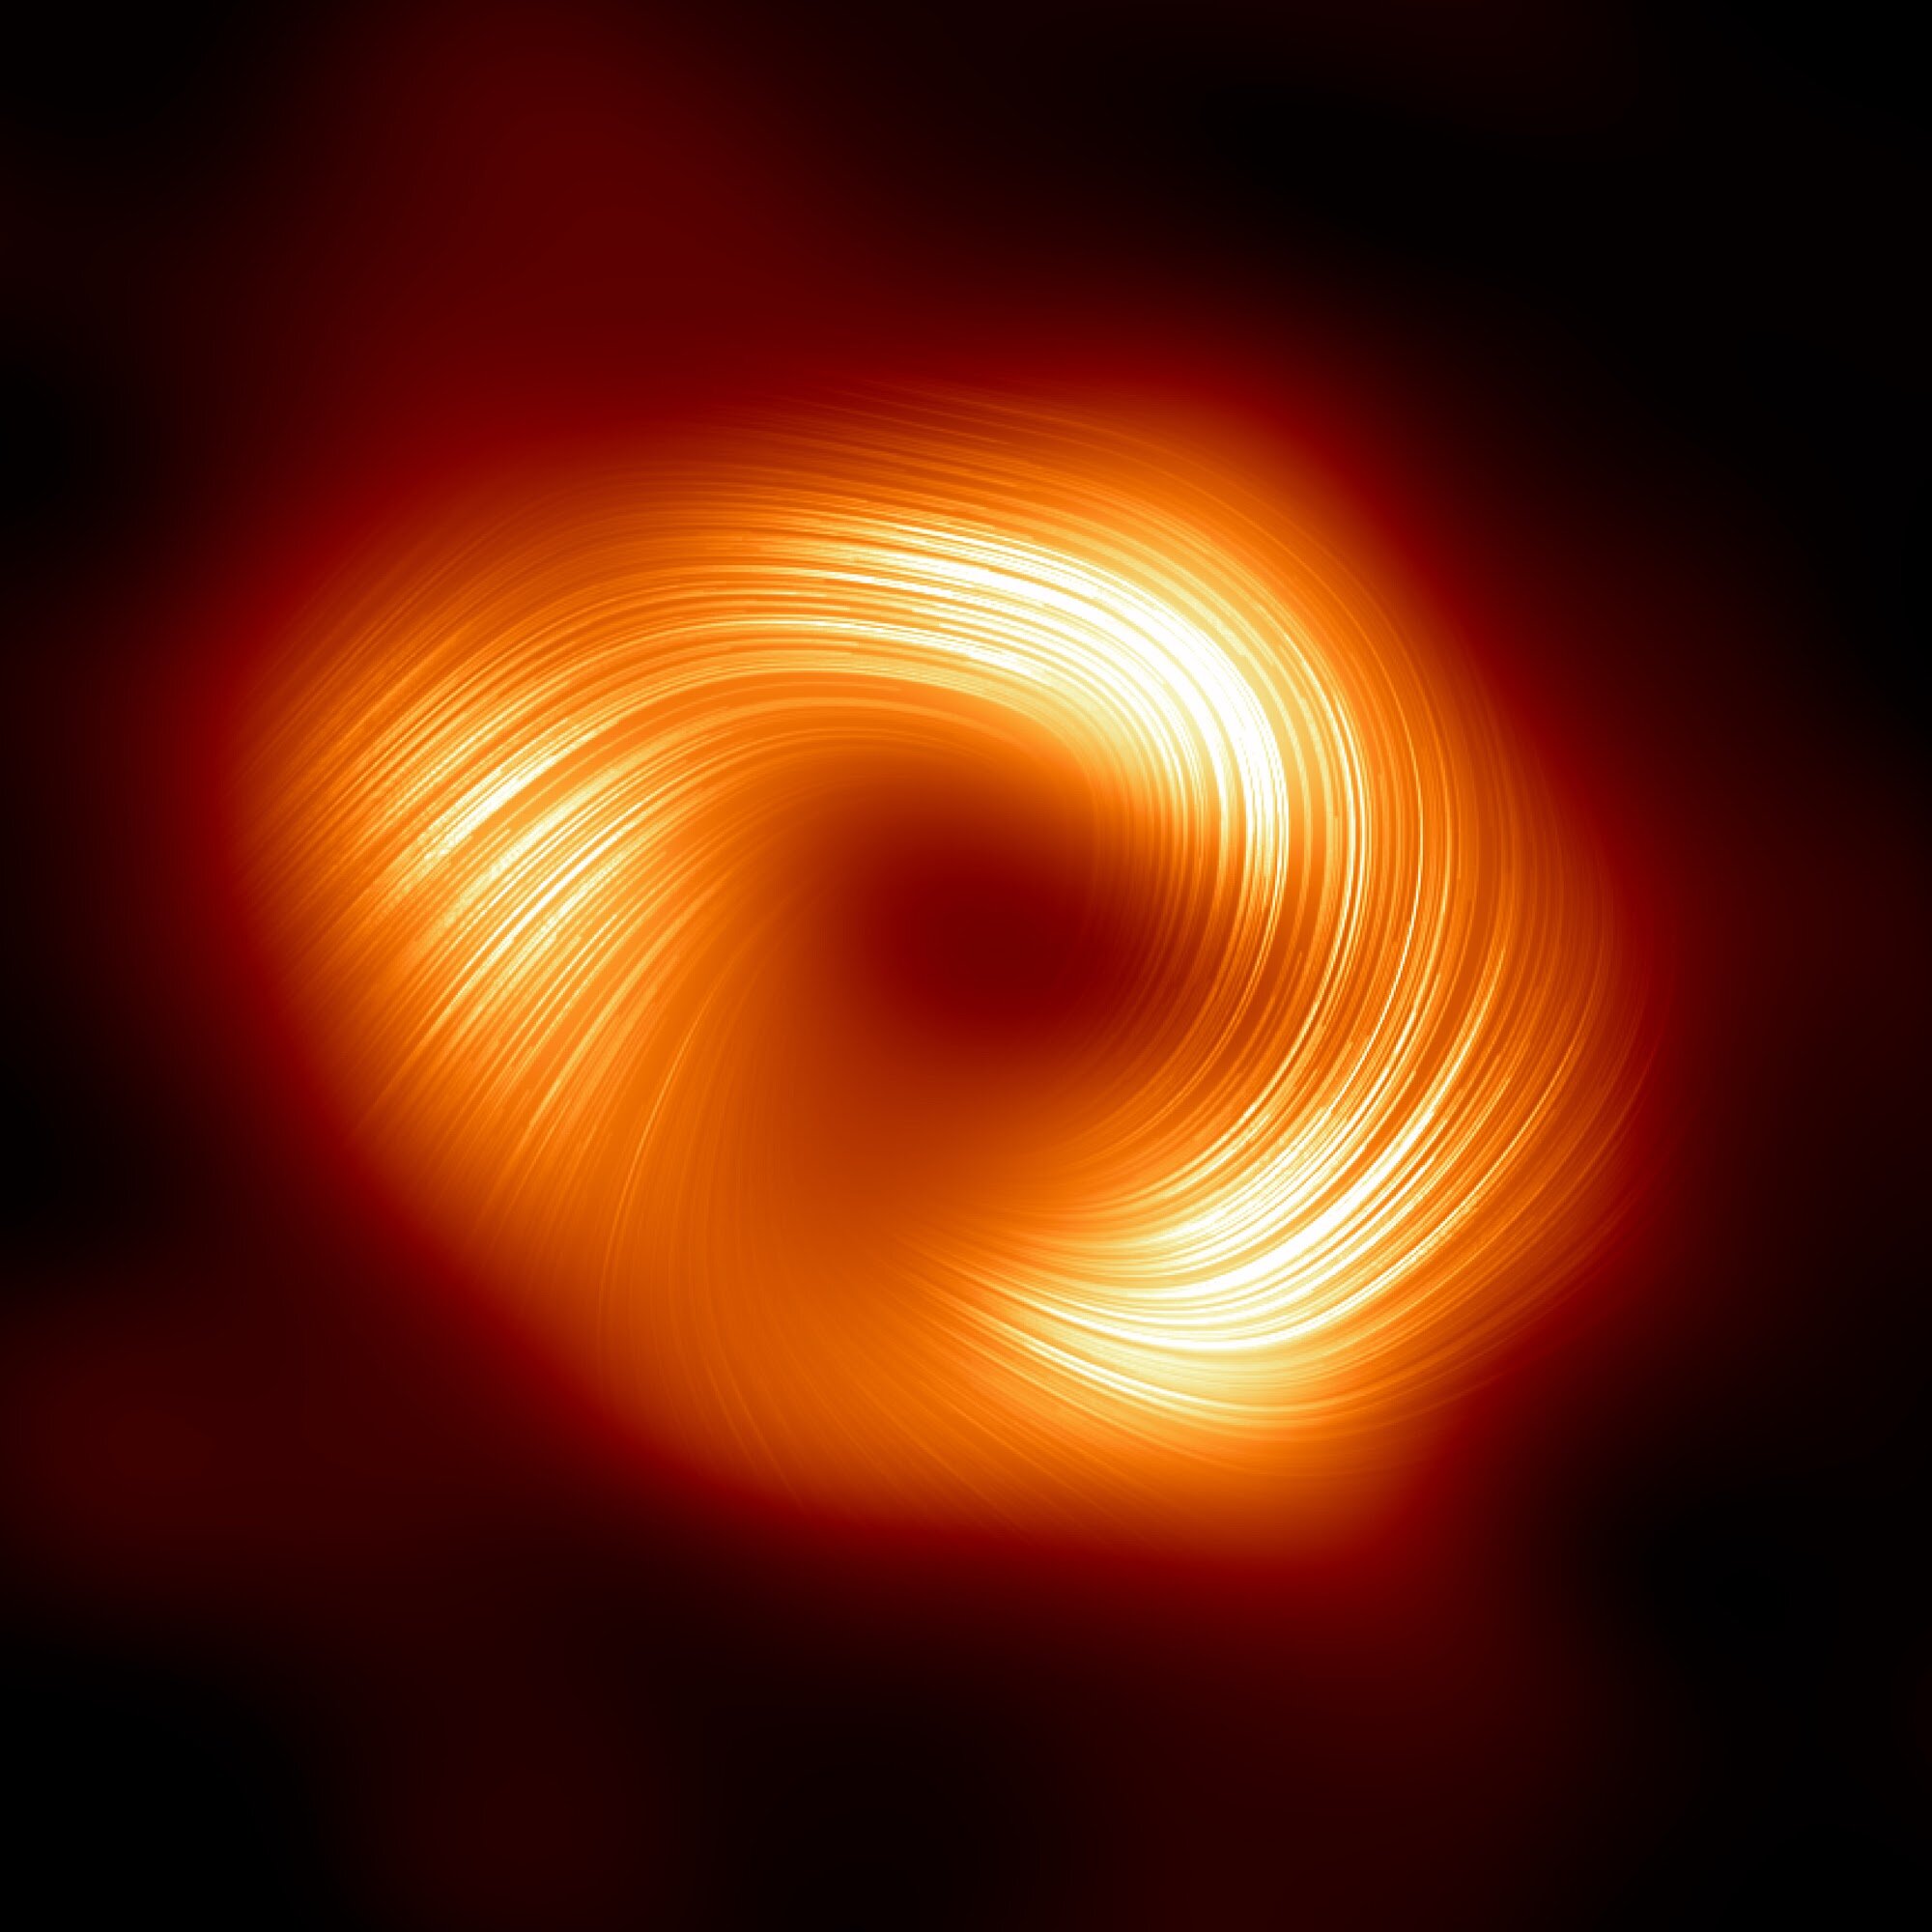 Astronomen entdecken starke Magnetfelder, die sich am Rand des zentralen Schwarzen Lochs der Milchstraße ausbreiten